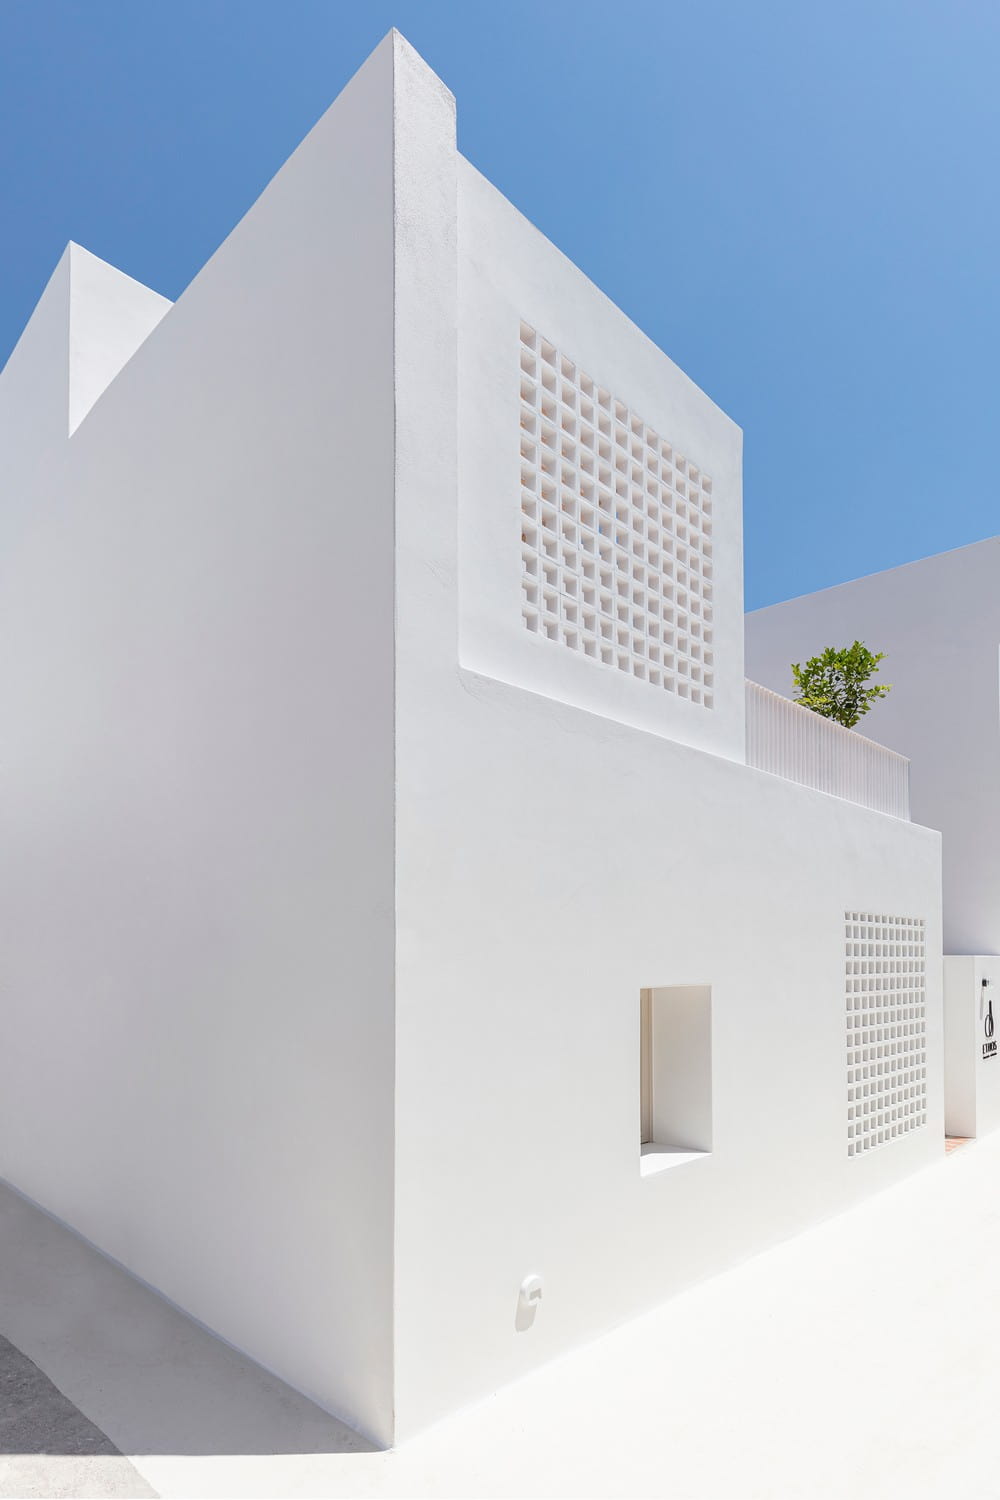 Ethos Vegan Hotel in Fira / Kapsimalis Architects